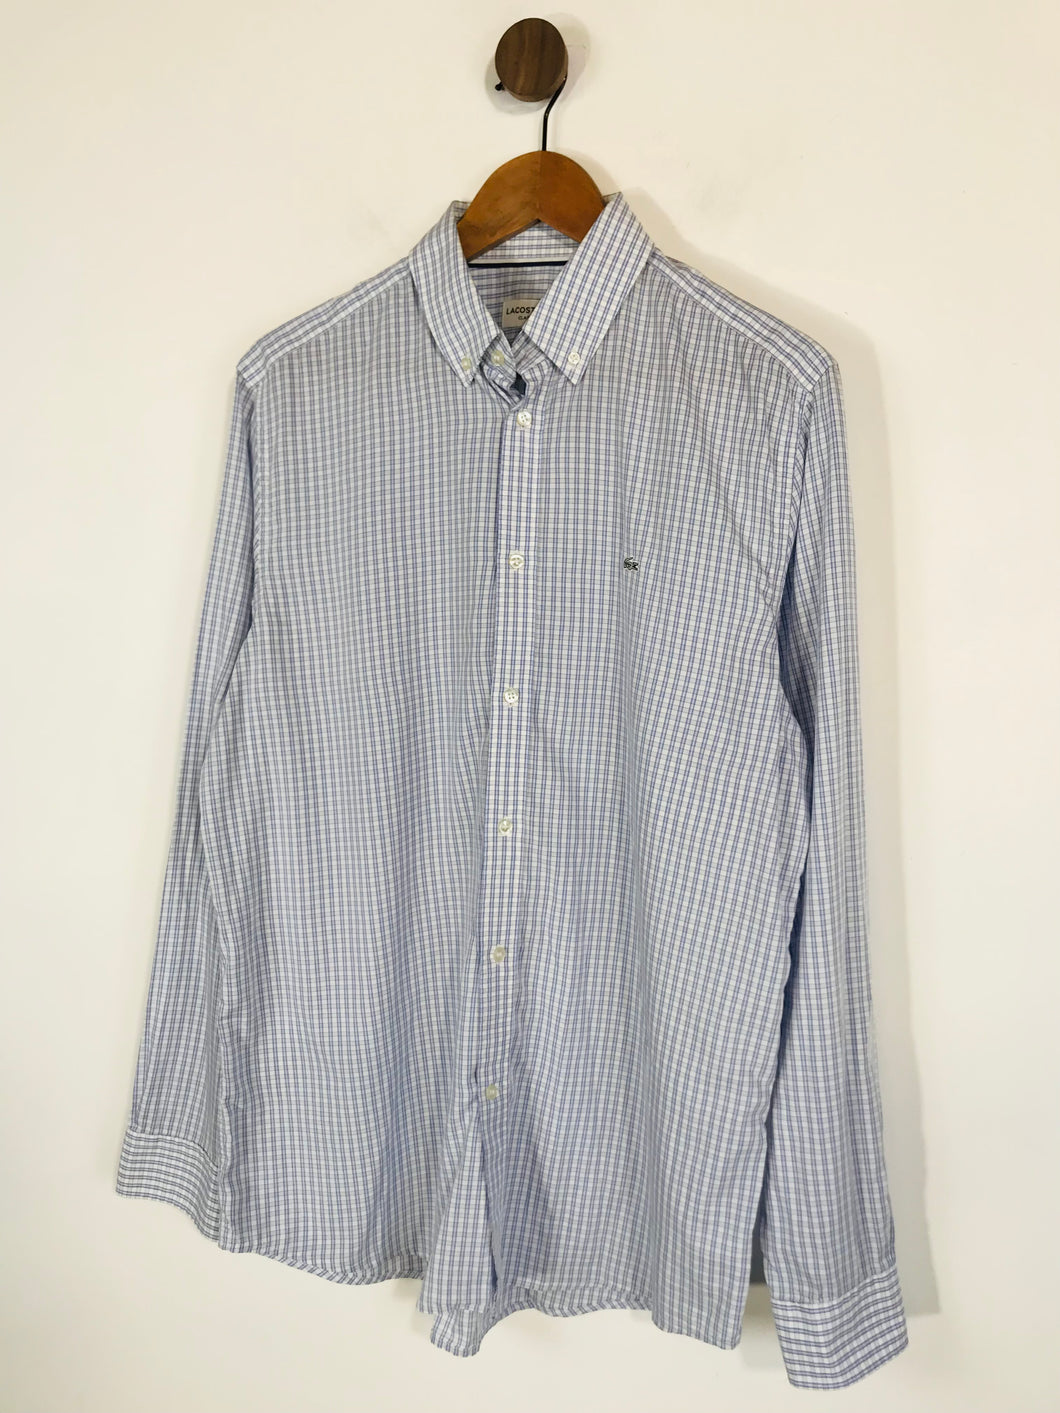 Lacoste Men's Cotton Check Gingham Button-Up Shirt | L 41 | Blue